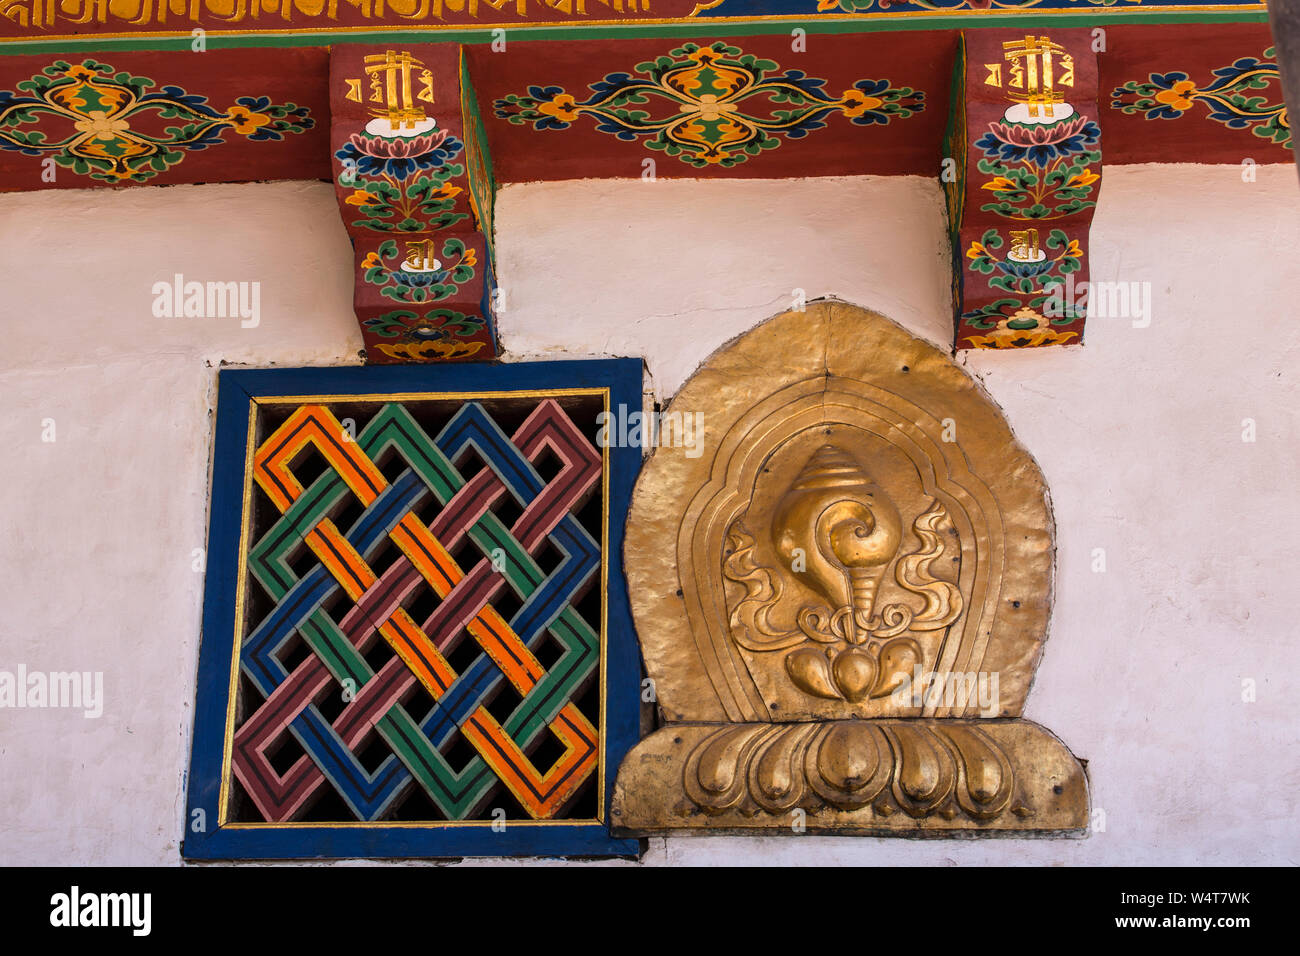 China, Tibet, Lhasa, architektonisches Detail eines Fensters als Endloser Knoten und einem vergoldeten Conch Shell auf der Jokhang buddhistischen Tempel, die über 1652 AD gegründet Es ist der heiligste buddhistische Tempel in Tibet und ist Teil der historischen Ensemble von der UNESCO zum Weltkulturerbe gemalt. Stockfoto